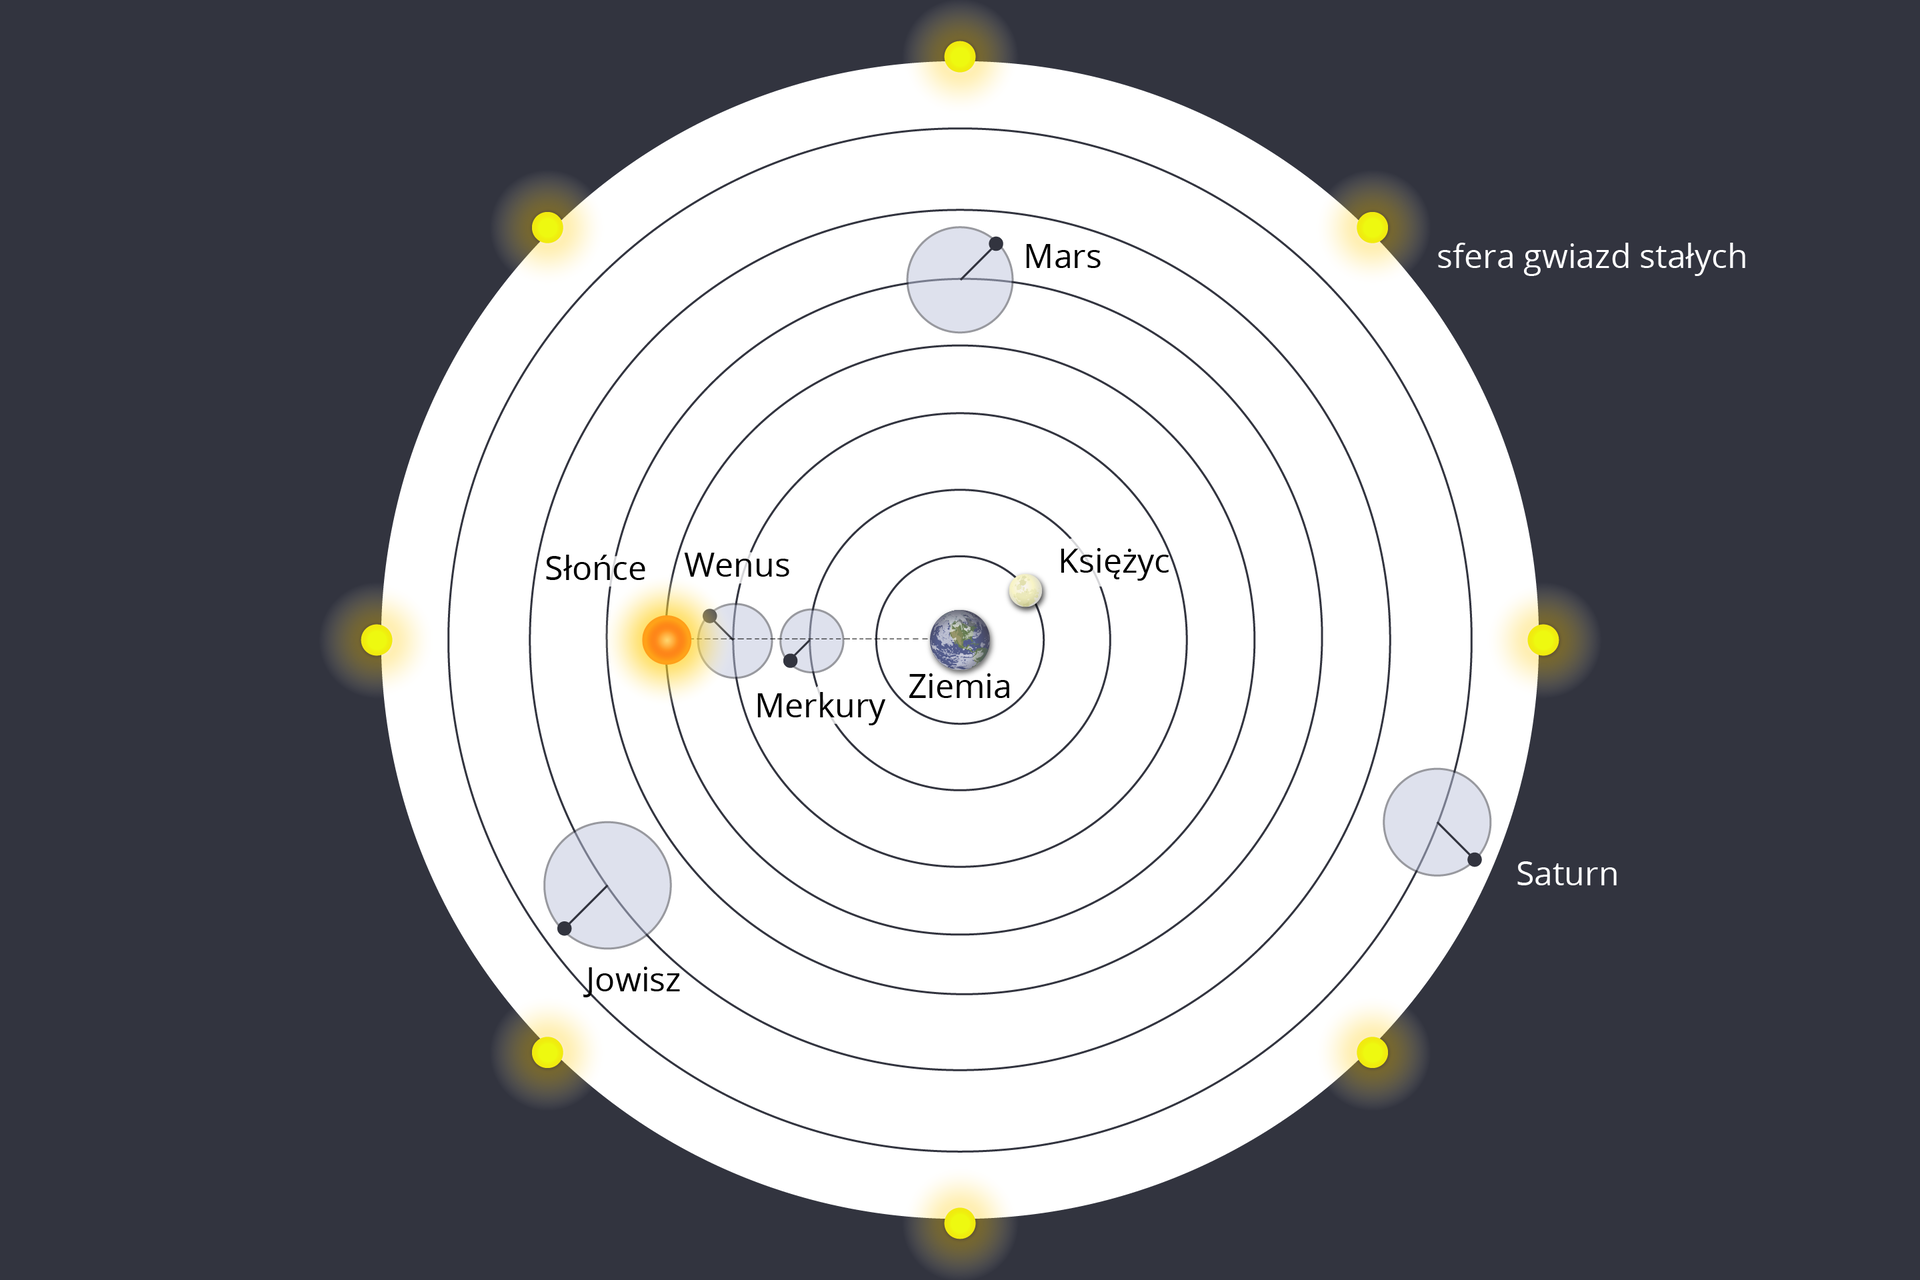 Ilustracja przedstawiająca system geocentryczny, w którym Ziemia zajmuje w stosunku do innych ciał niebieskich centralne położenie. Tło ciemnoszare. Na środku białe koło, na jego brzegach żółte punkty – „strefa gwiazd stałych”. W środku znajduje się 7 okręgów, ułożonych kolejno wewnątrz siebie, od największego do najmniejszego. Wewnątrz najmniejszego znajduje się Ziemia. Na pierwszym od Ziemi – Księżyc. Na drugim od Ziemi – Merkury. Na trzecim – Wenus. Na czwartym Słońce. Na piątym Mars. Na szóstym – Jowisz. Na siódmym – Saturn.